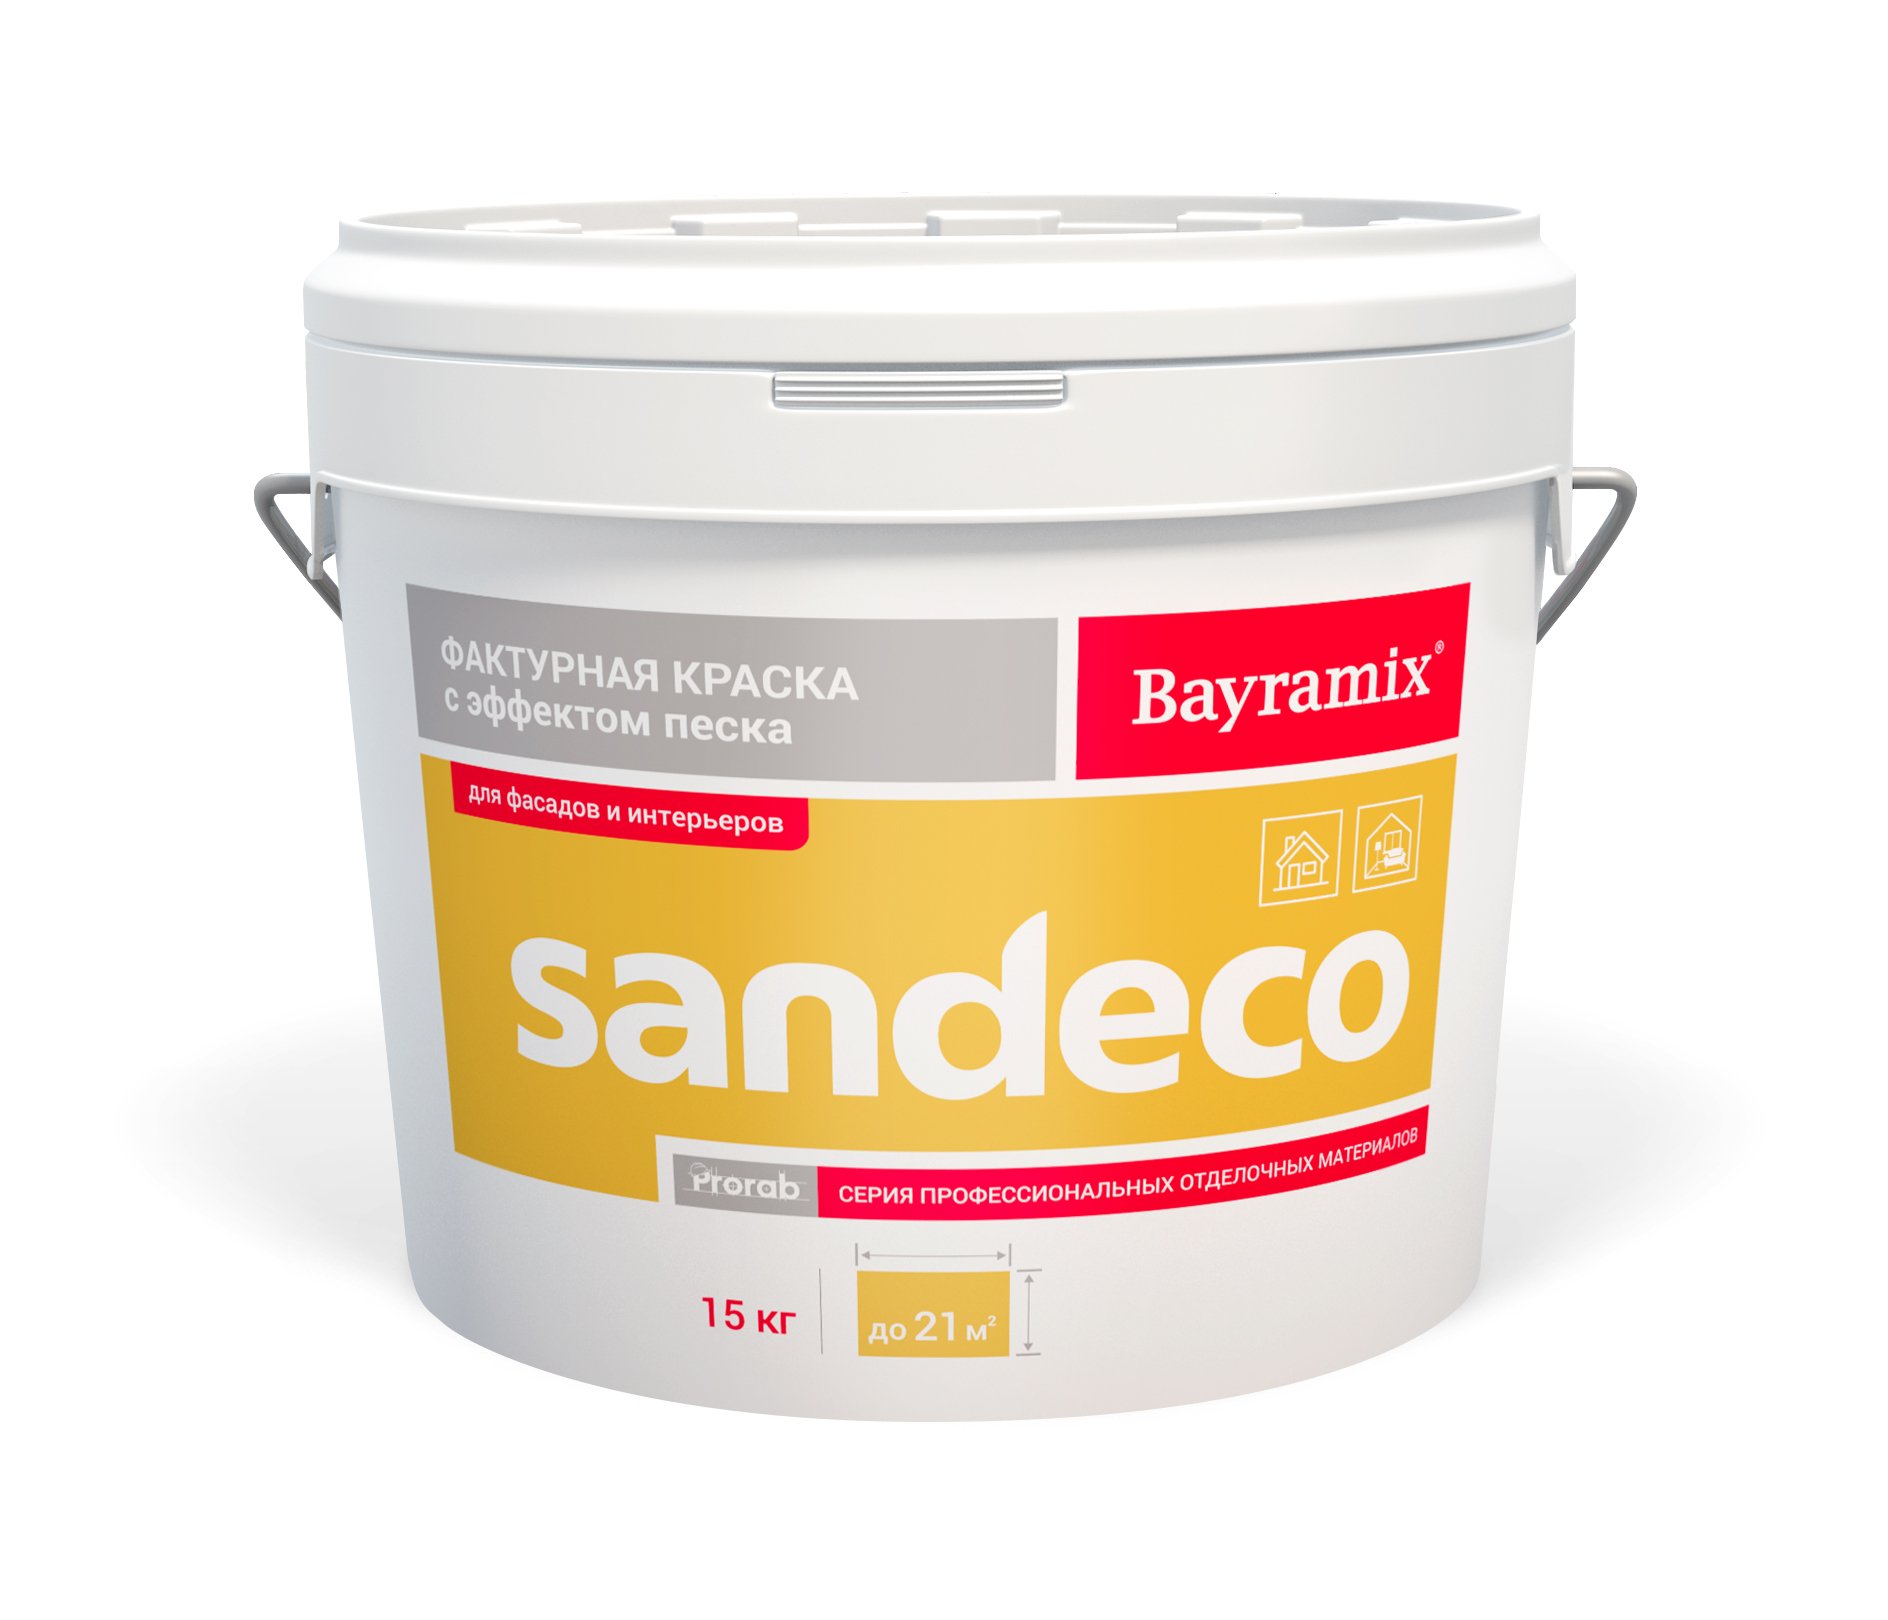 Фактурная краска Bayramix Sandeco для наружных и внутренних работ, 15 кг набор кистей для внутренних работ anza